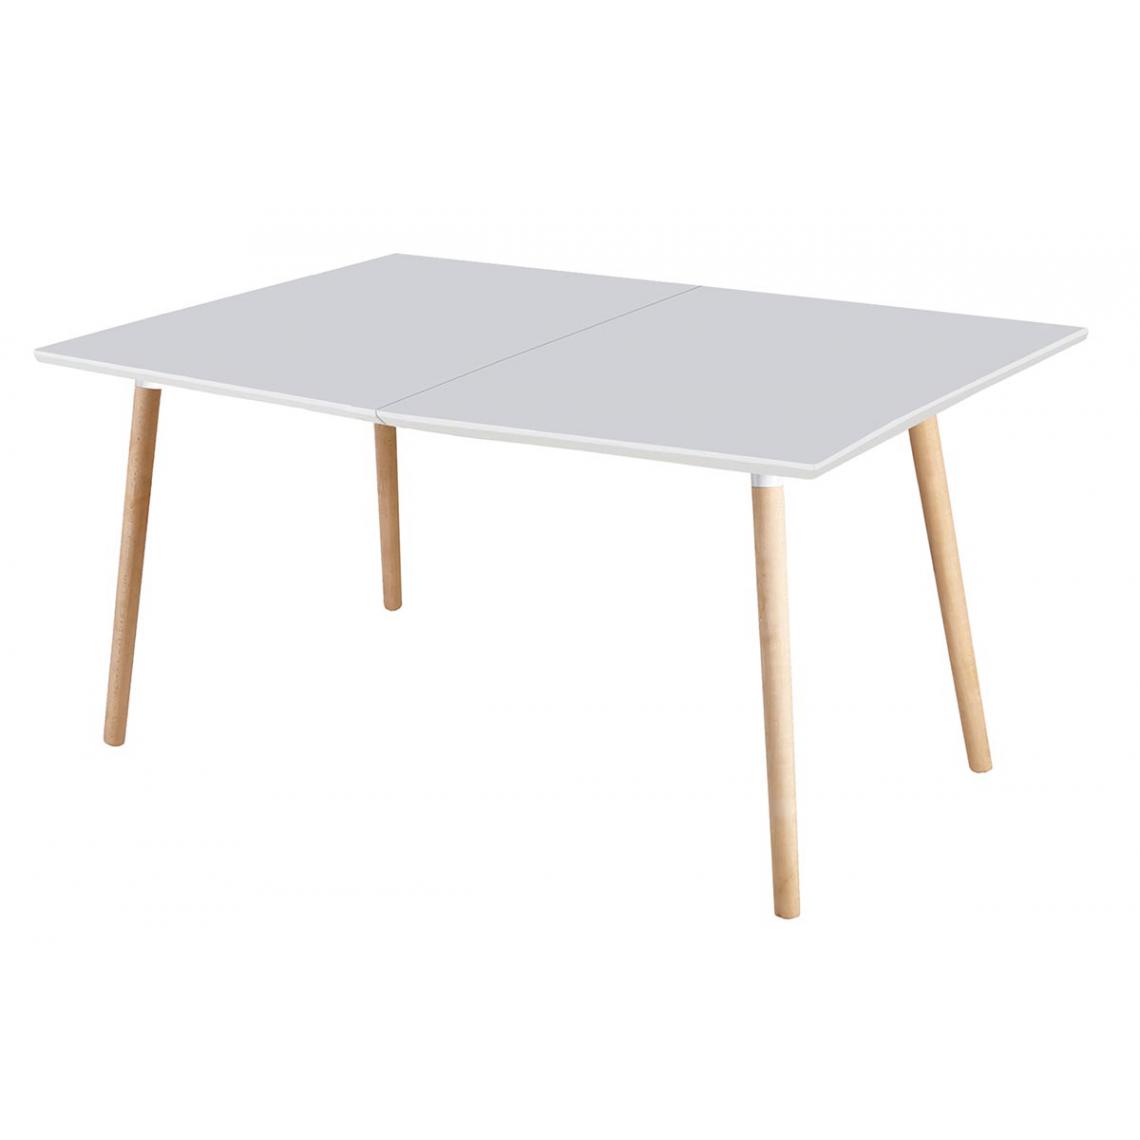 Pegane - Table à manger rectangulaire extensible coloris blanc / hêtre - Longueur 140 - 220 x profondeur 90 x hauteur 75 cm - Tables à manger